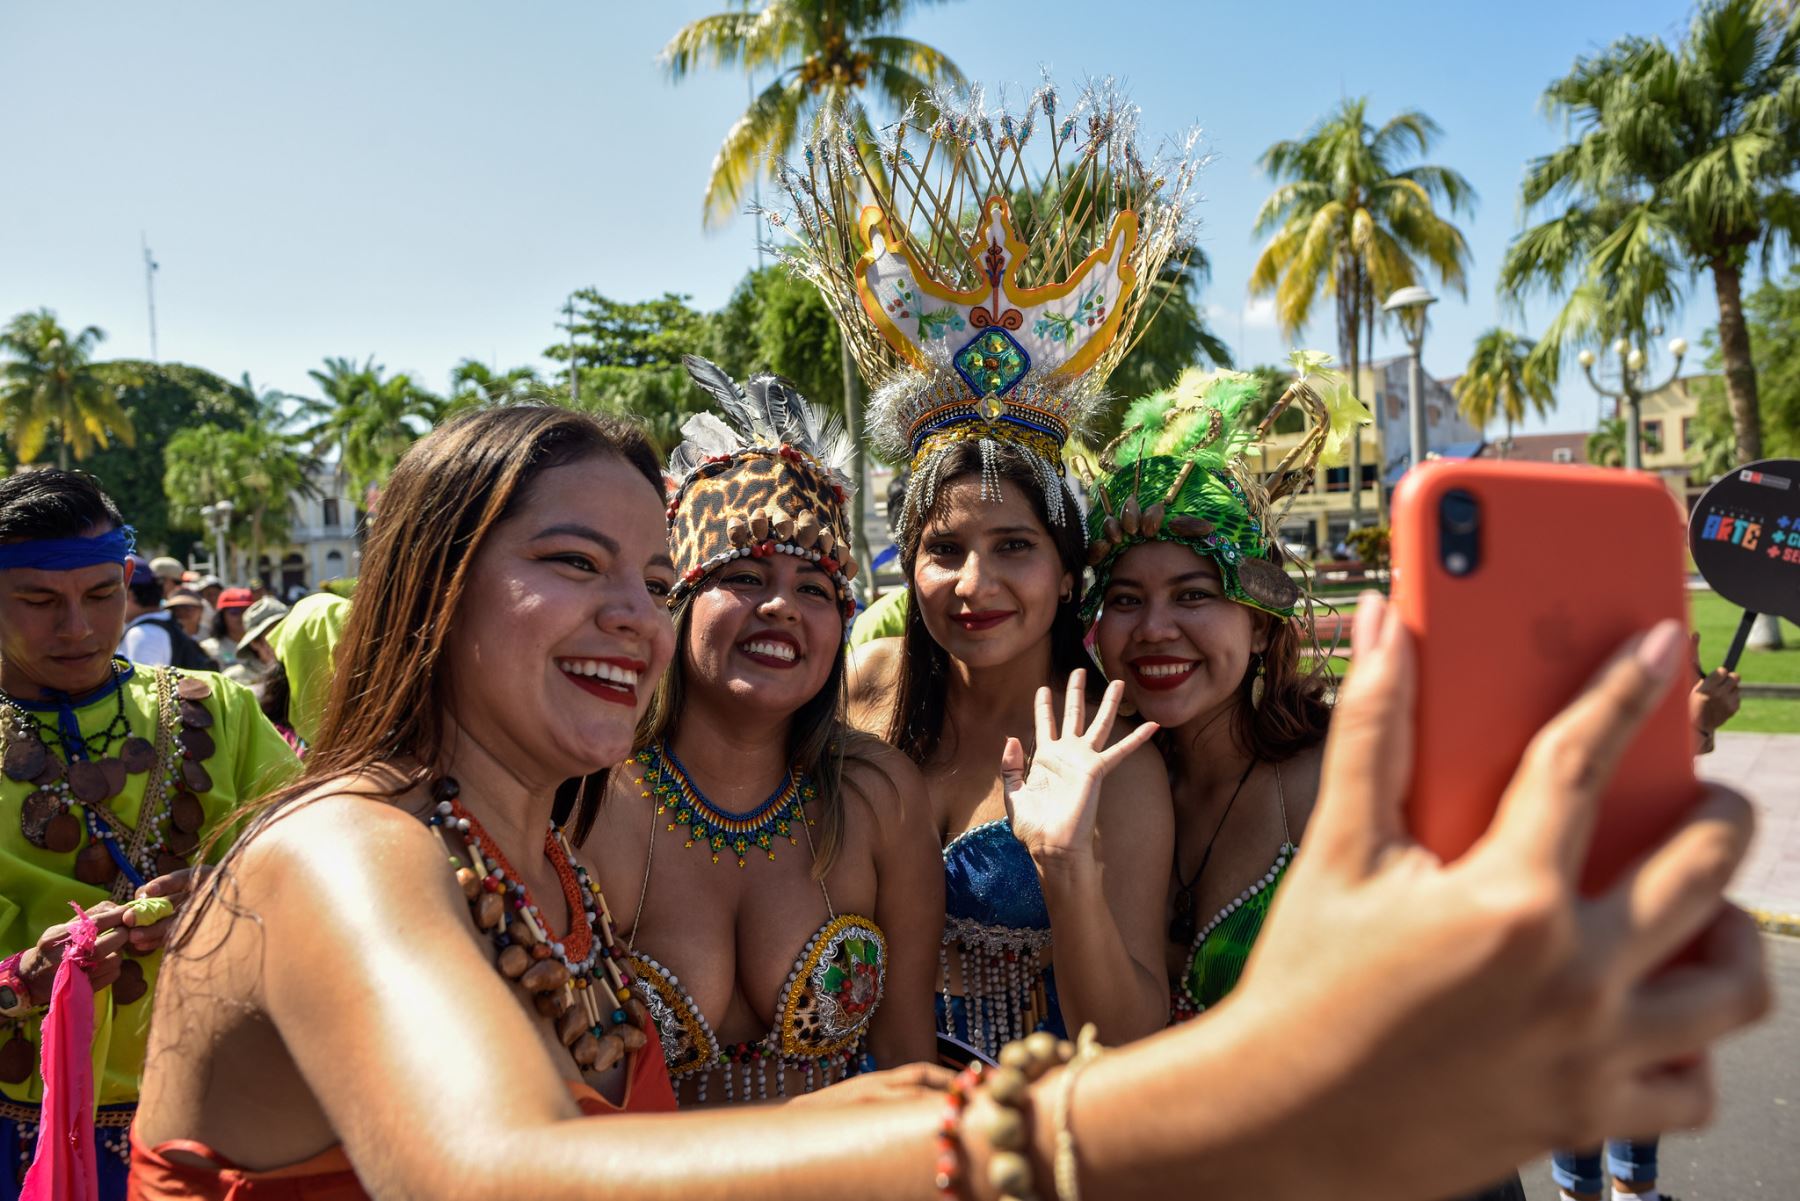 Así, en esta ocasión, más de 50 artistas se dieron cita en la ciudad de Iquitos, llenando de alegría, danza, música y tradición en un pasacalle que partió del malecón Tarapacá, continuó por la plaza de Armas y finalizó en el parque zonal, sede del festival. Los bailarines deleitaron a los espectadores con danzas regionales como la polca tacneña, el carnaval arequipeño, la marinera norteña concheperla, la danza huanuqueña tangarana, el carnaval cajamarquino cilulo, entre otras. 
Foto: ANDINA/Bicentenario